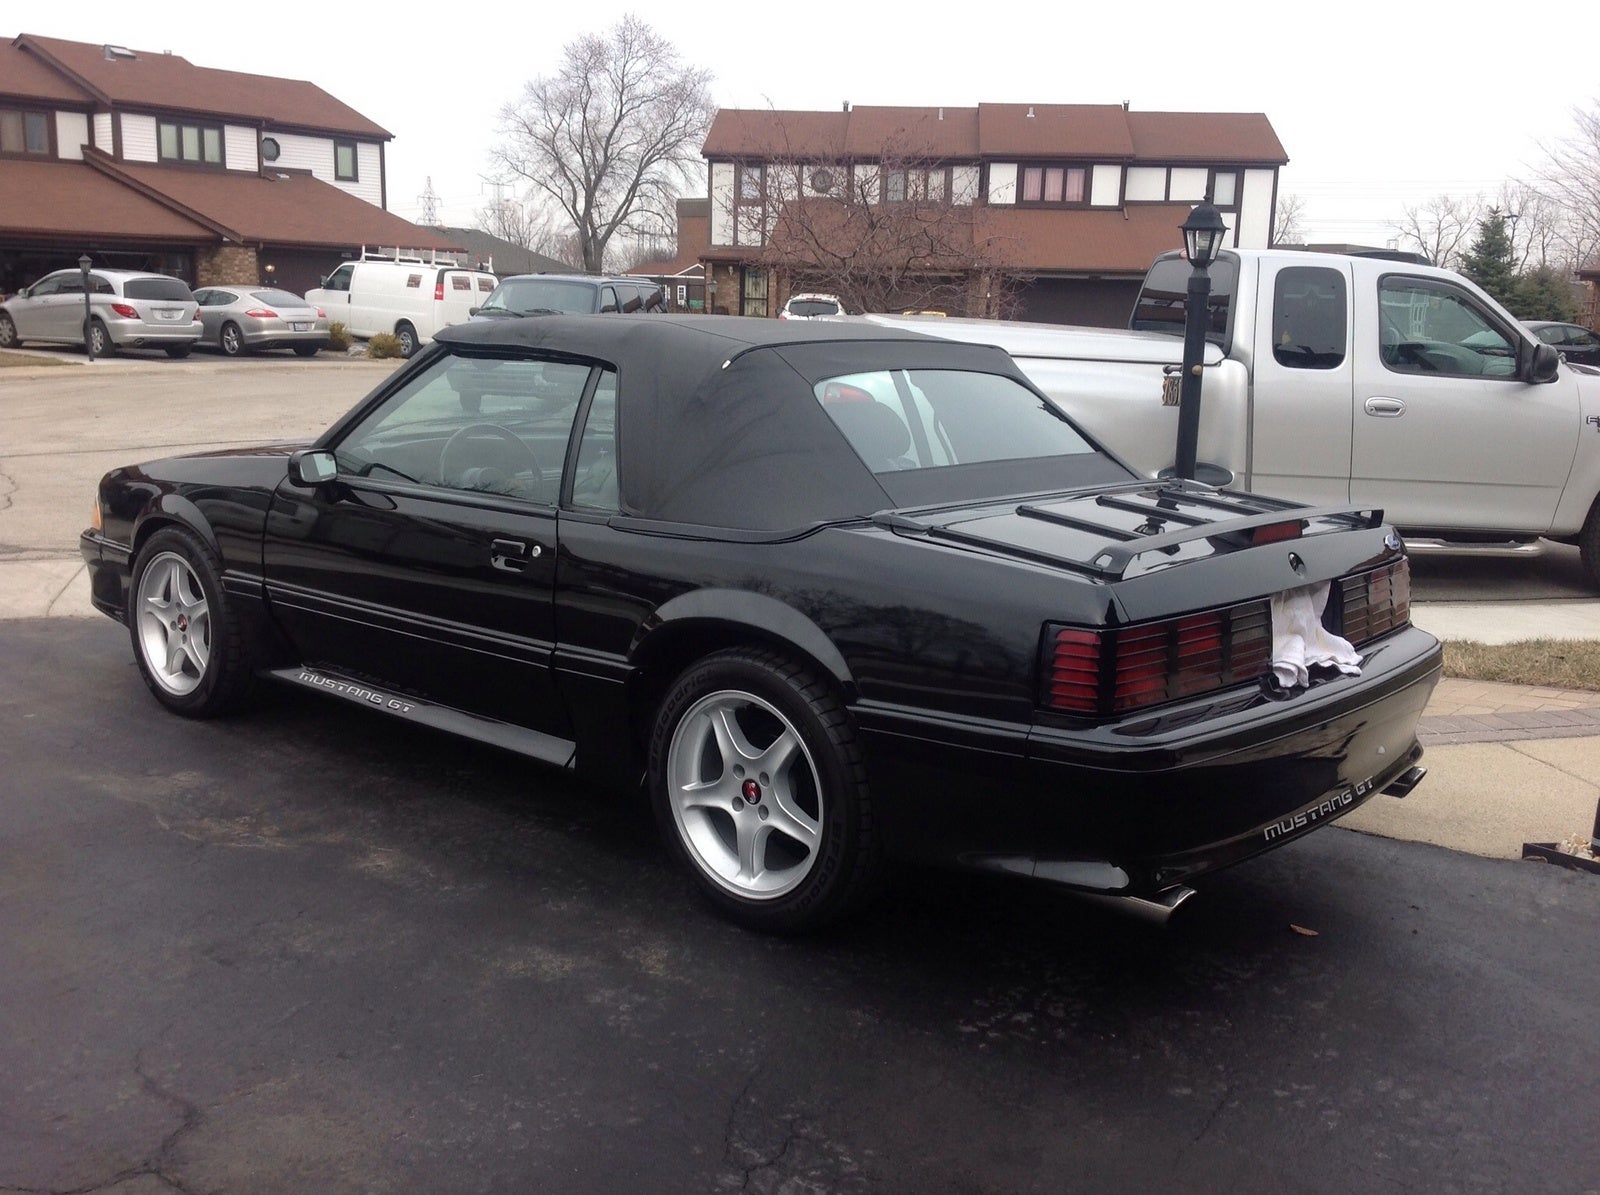 Mustang 1989 Specs